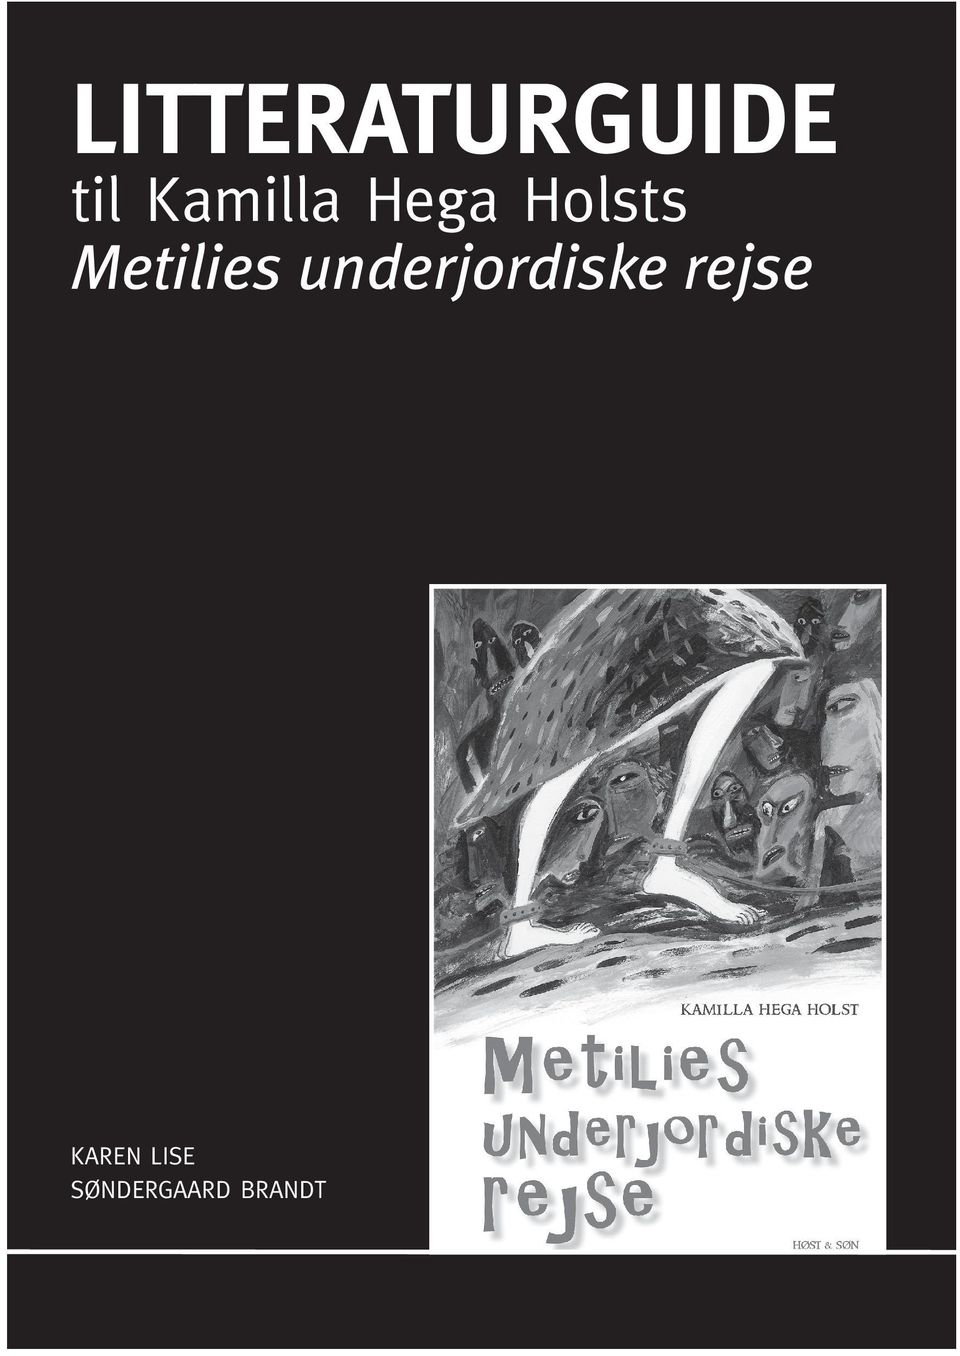 Metilies underjordiske